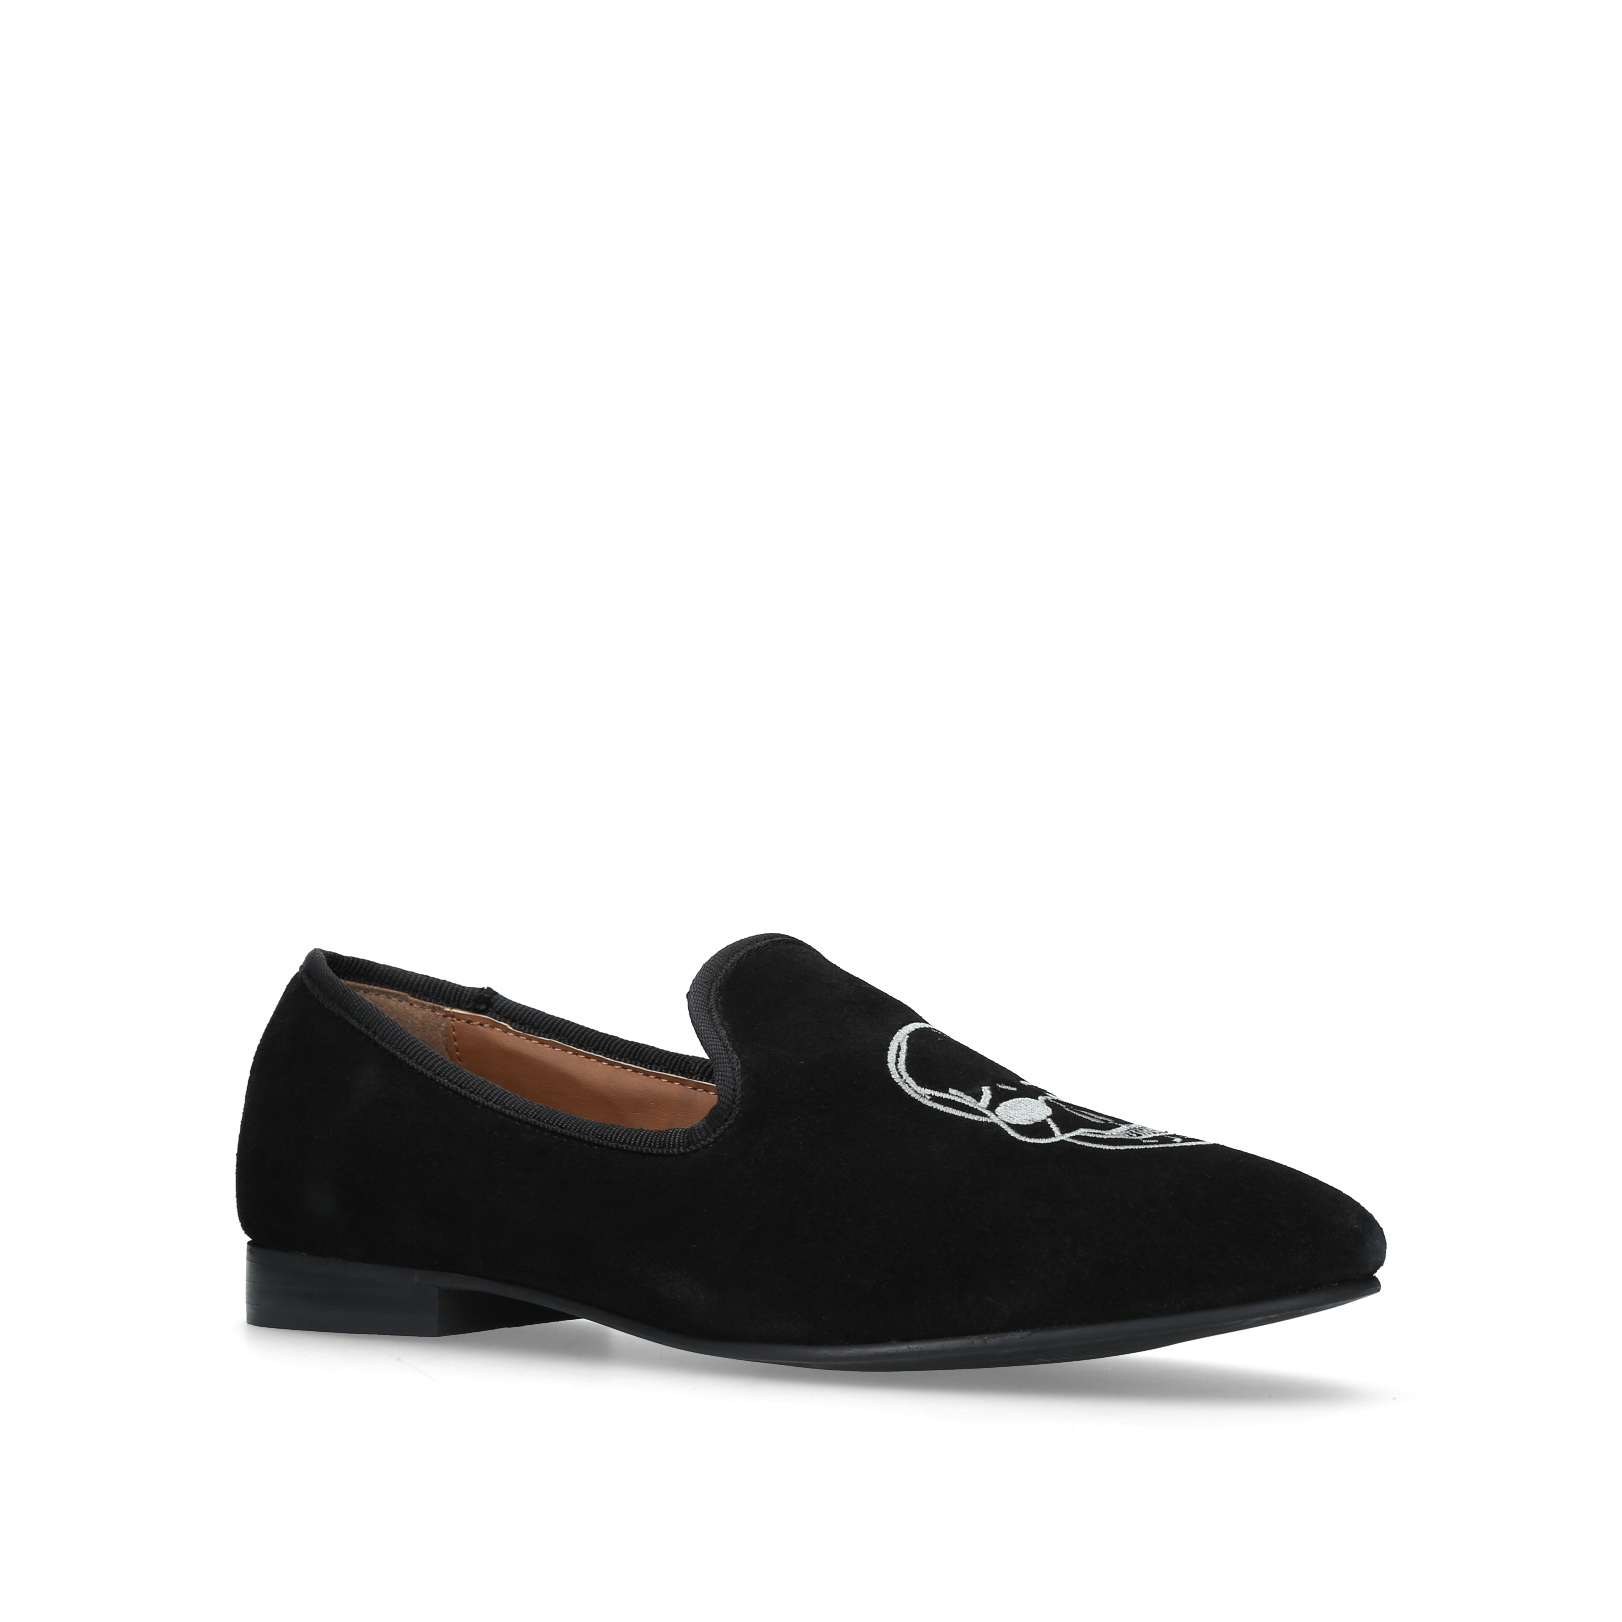 OLDBURY KG by Kurt Geiger Oldbury Black Casual Shoes by KG ...